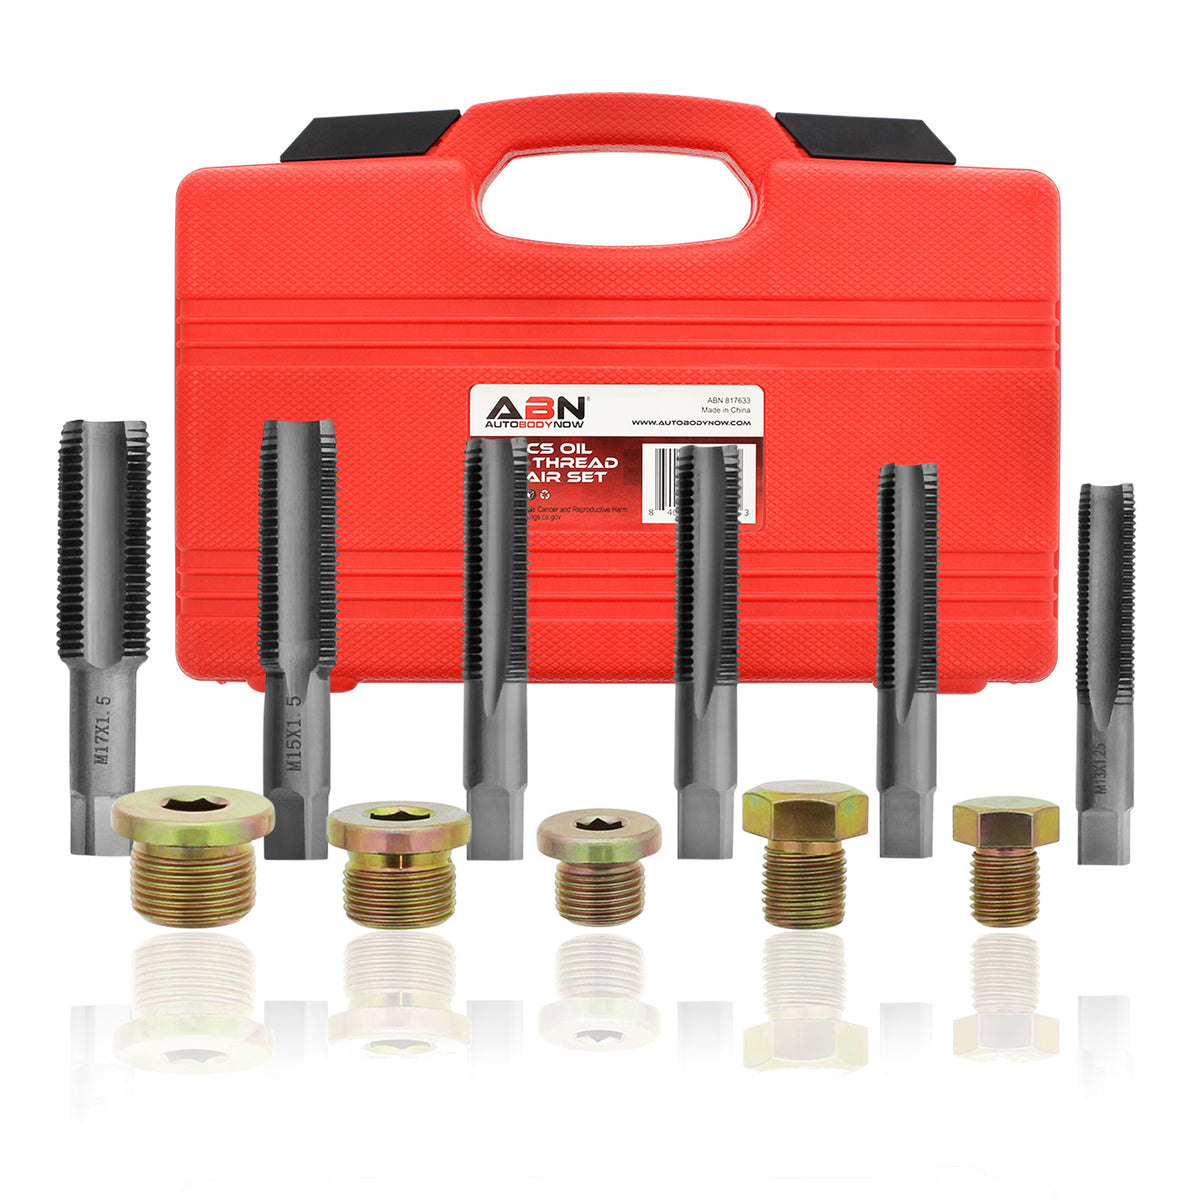 Thread Repair Kit - 114pc Oil Pan Drain Plug Kit with Screw Taps